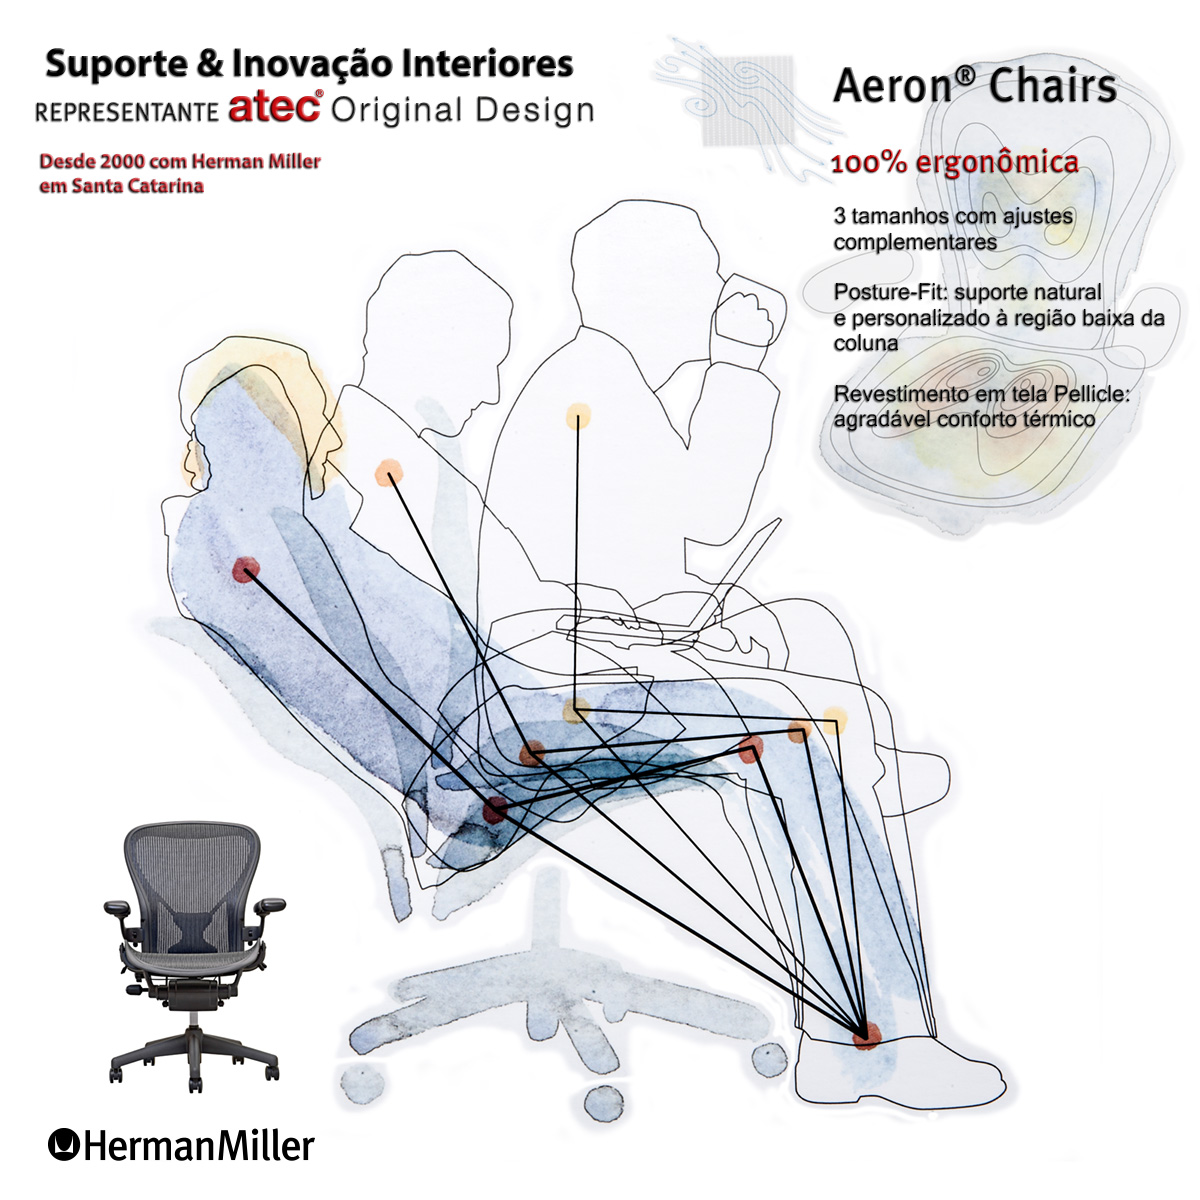 Aeron Chair by Herman Miller || Suporte & Inovação Interiores, representante Atec Original Design - Maior Dealer Herman Miller da América Latina